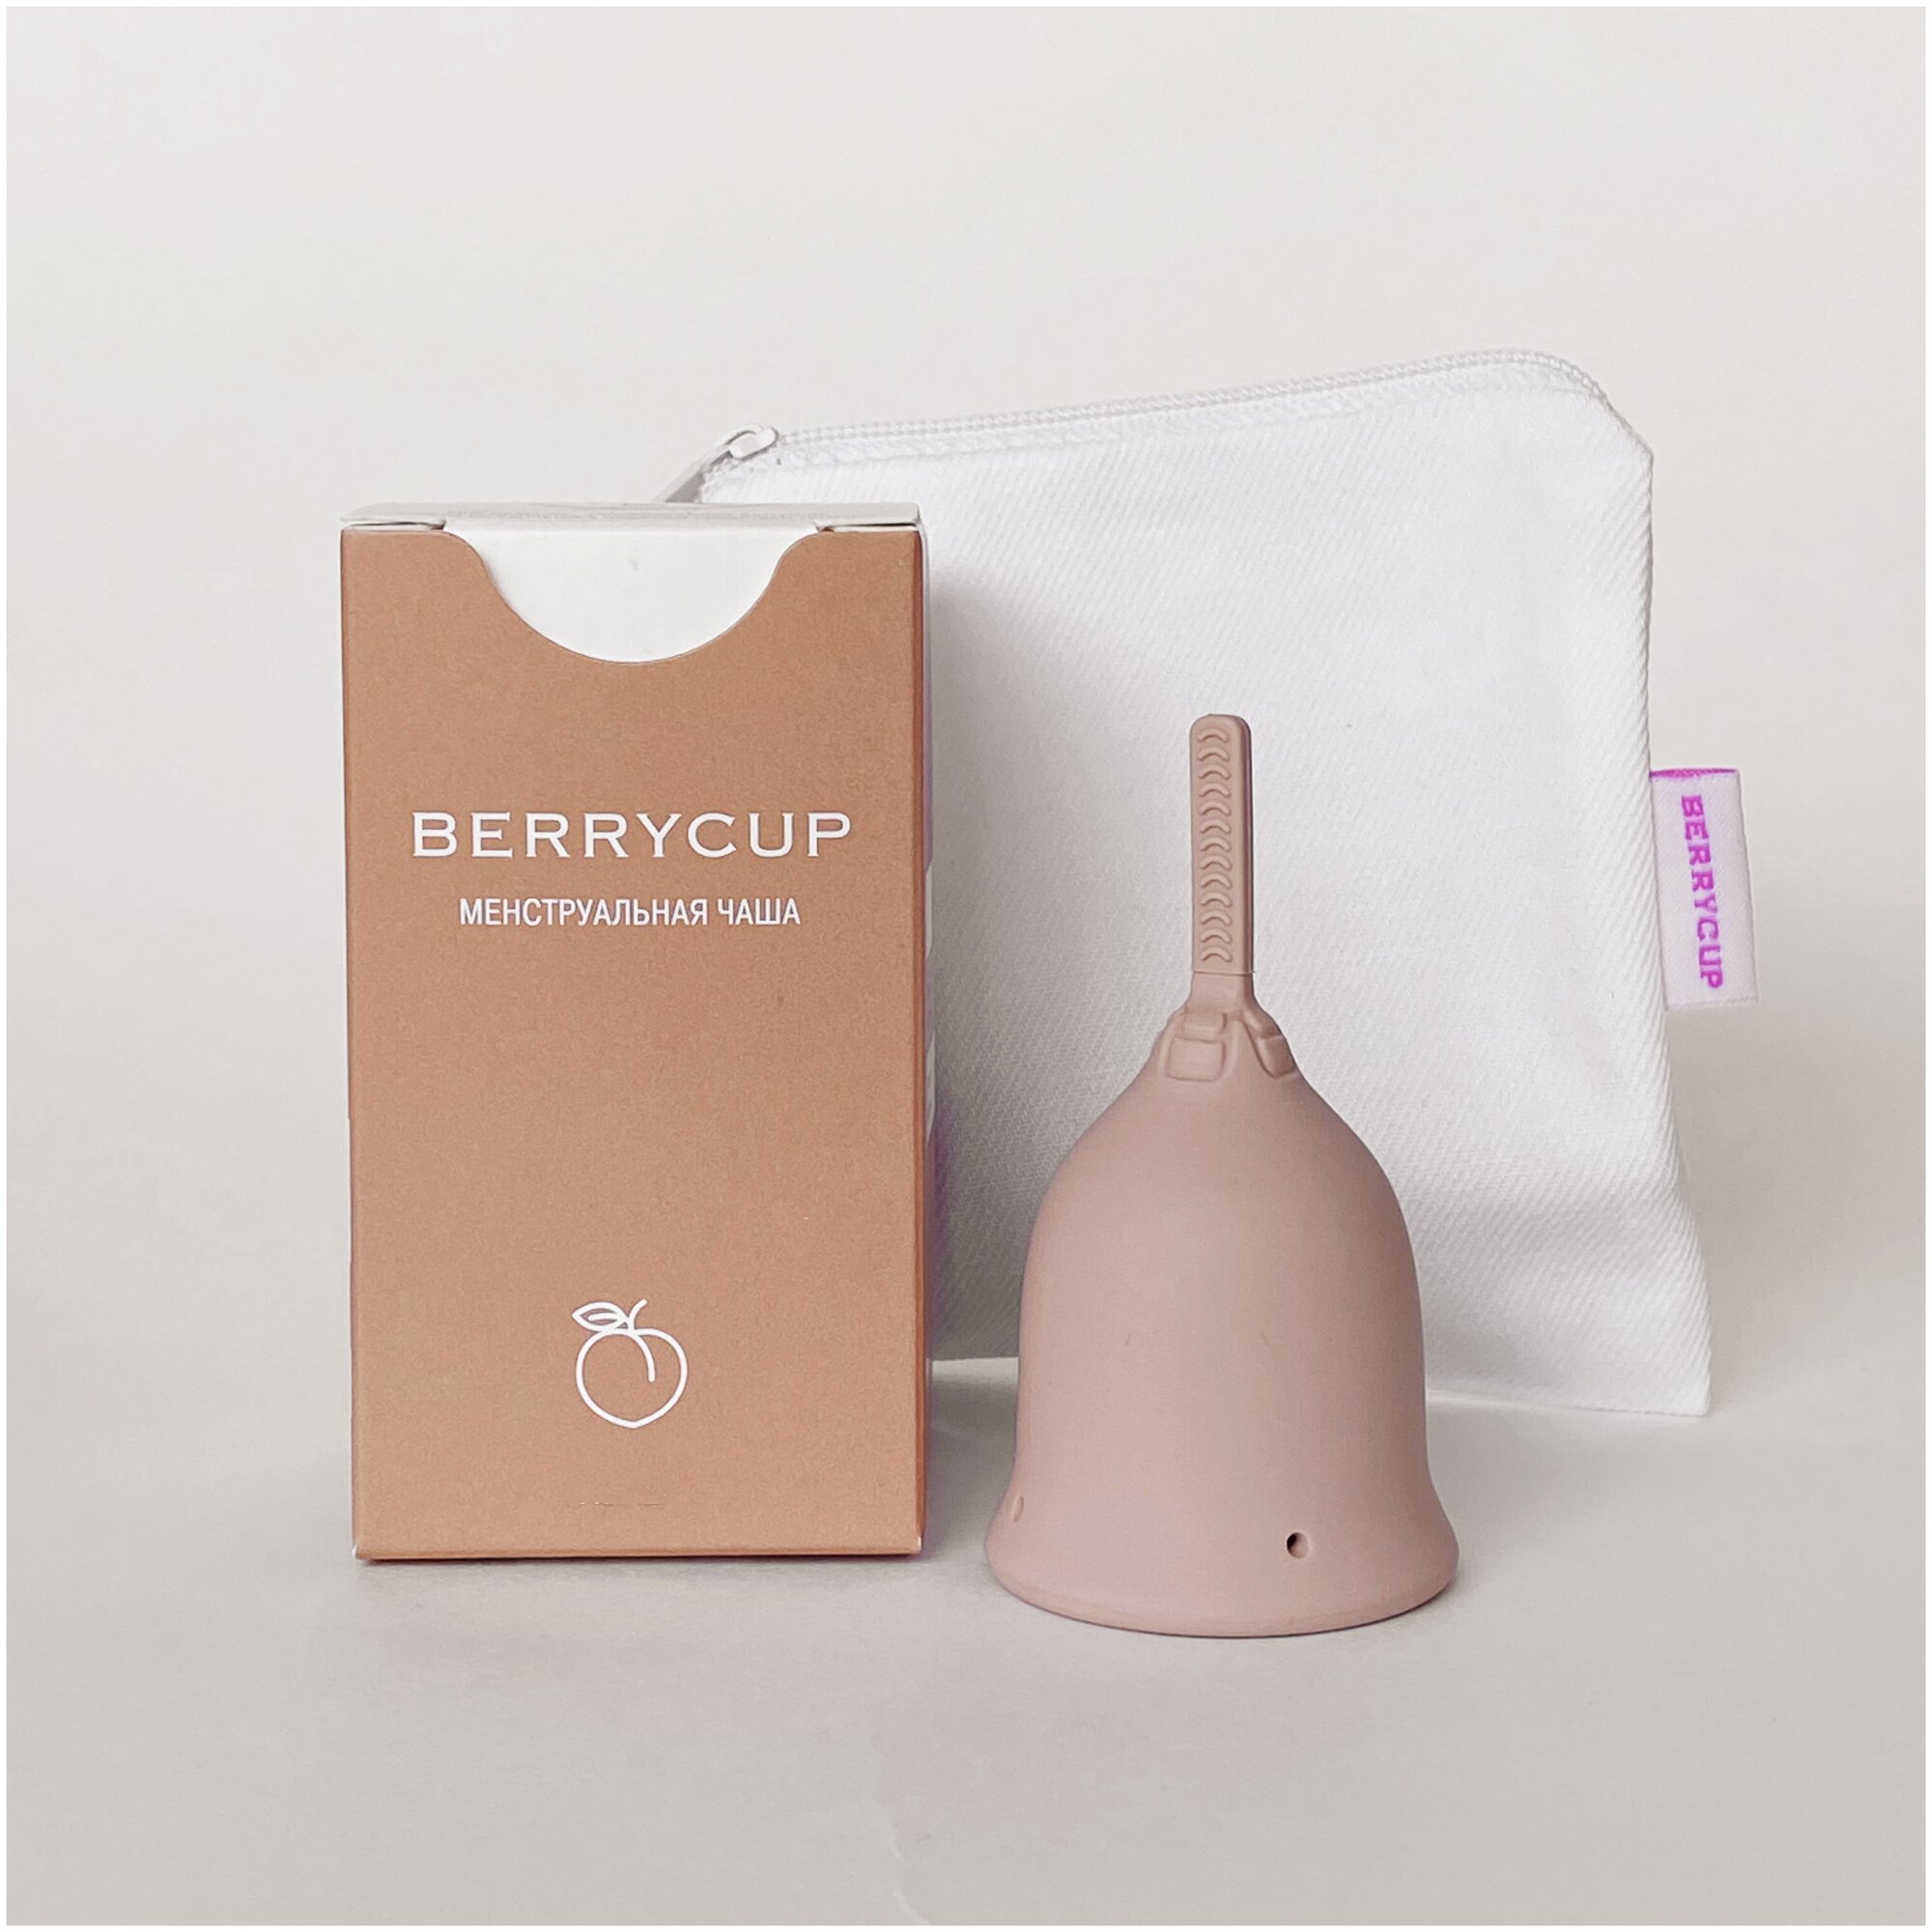 Менструальная чаша BerryСup, размер 2, цвет Nude (мягкая)